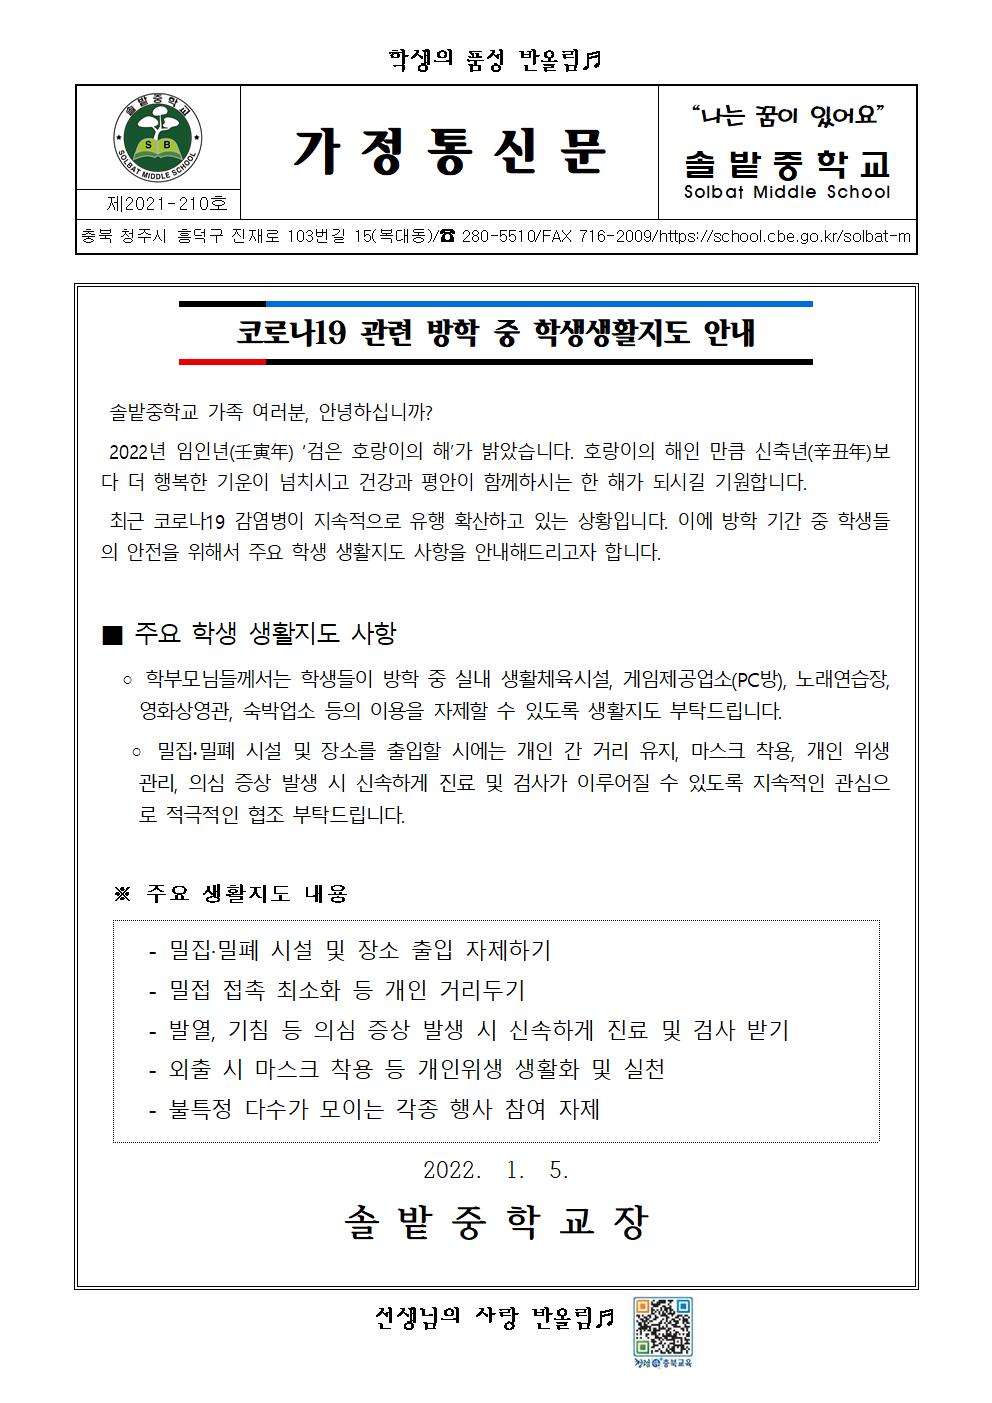 코로나19 관련 방학 중 학생생활지도 안내(가정통신문)001